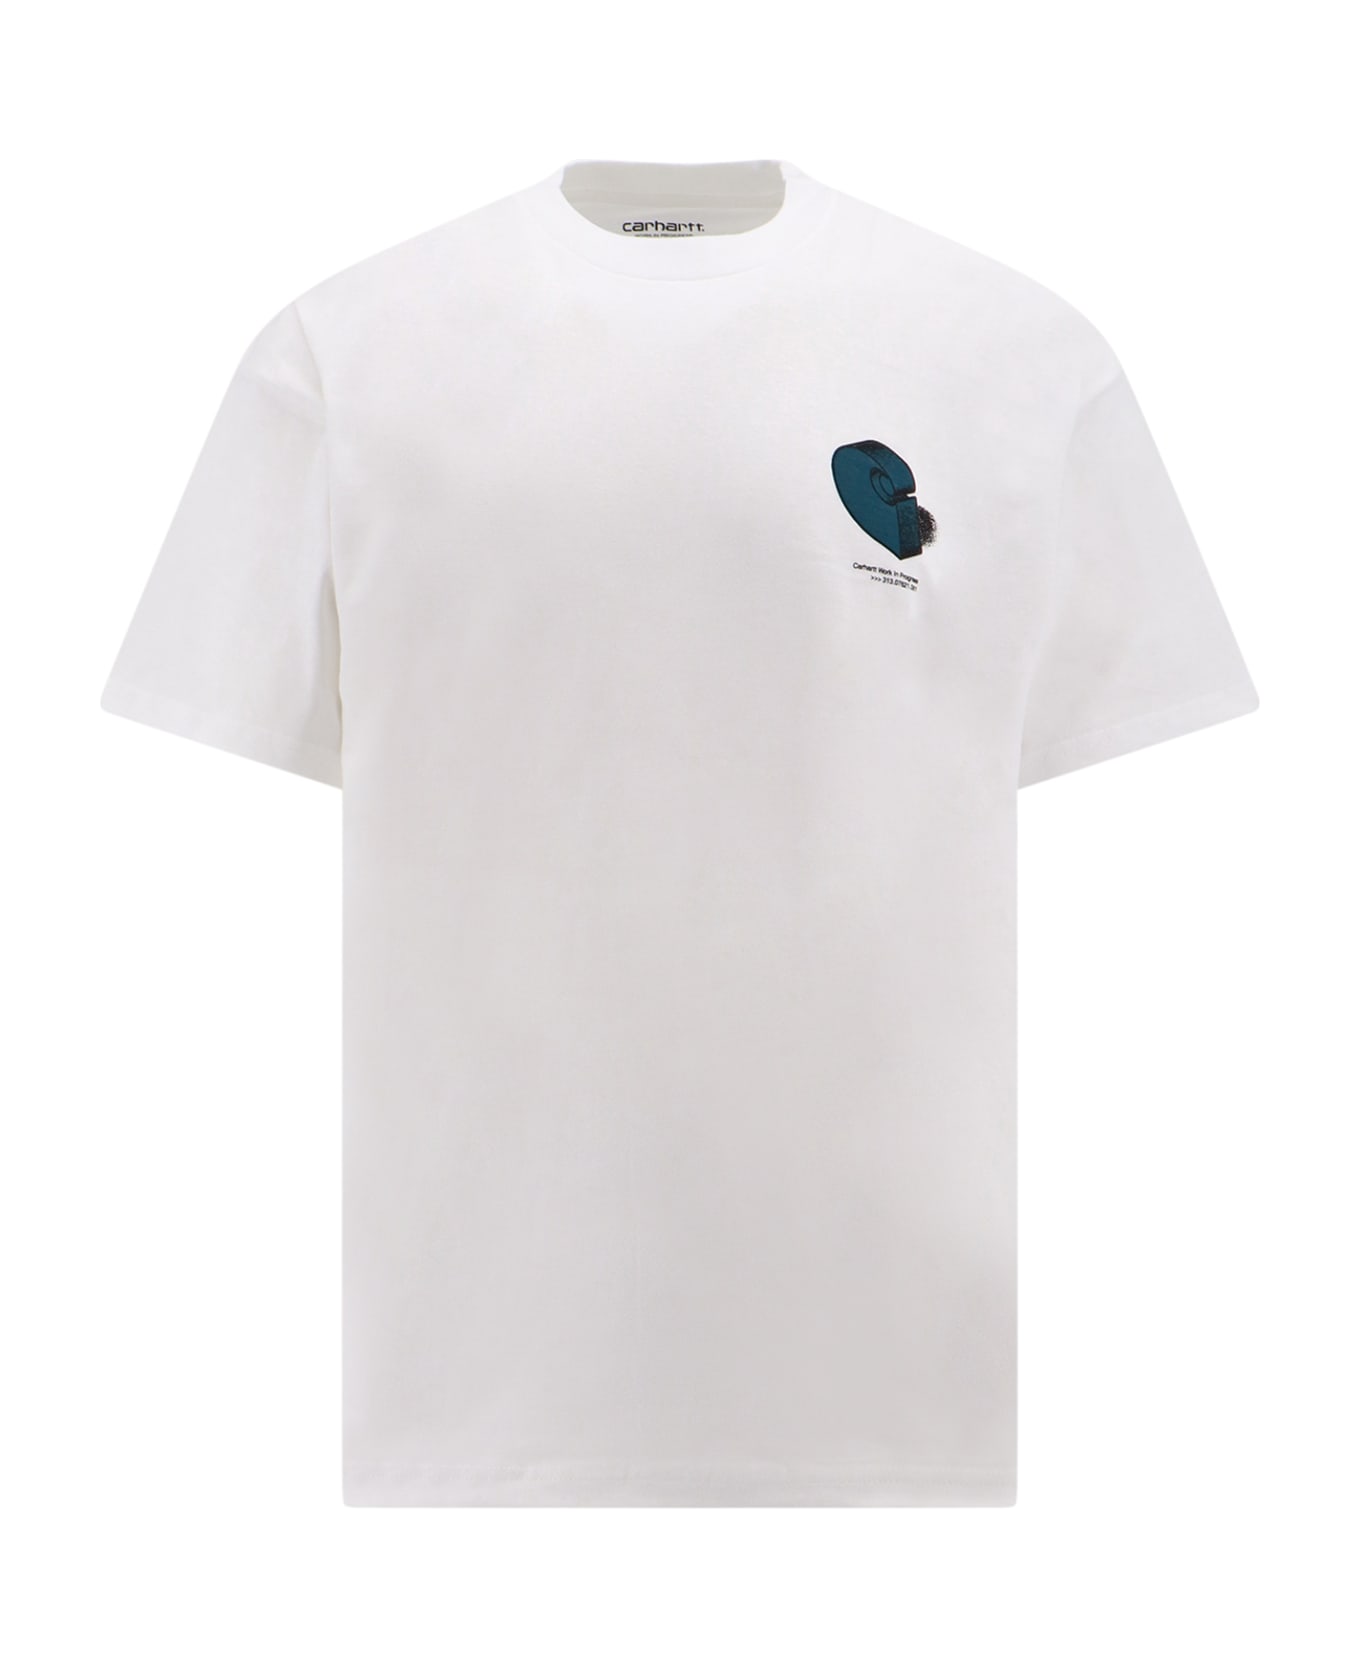 Carhartt WIP T-shirt - White シャツ